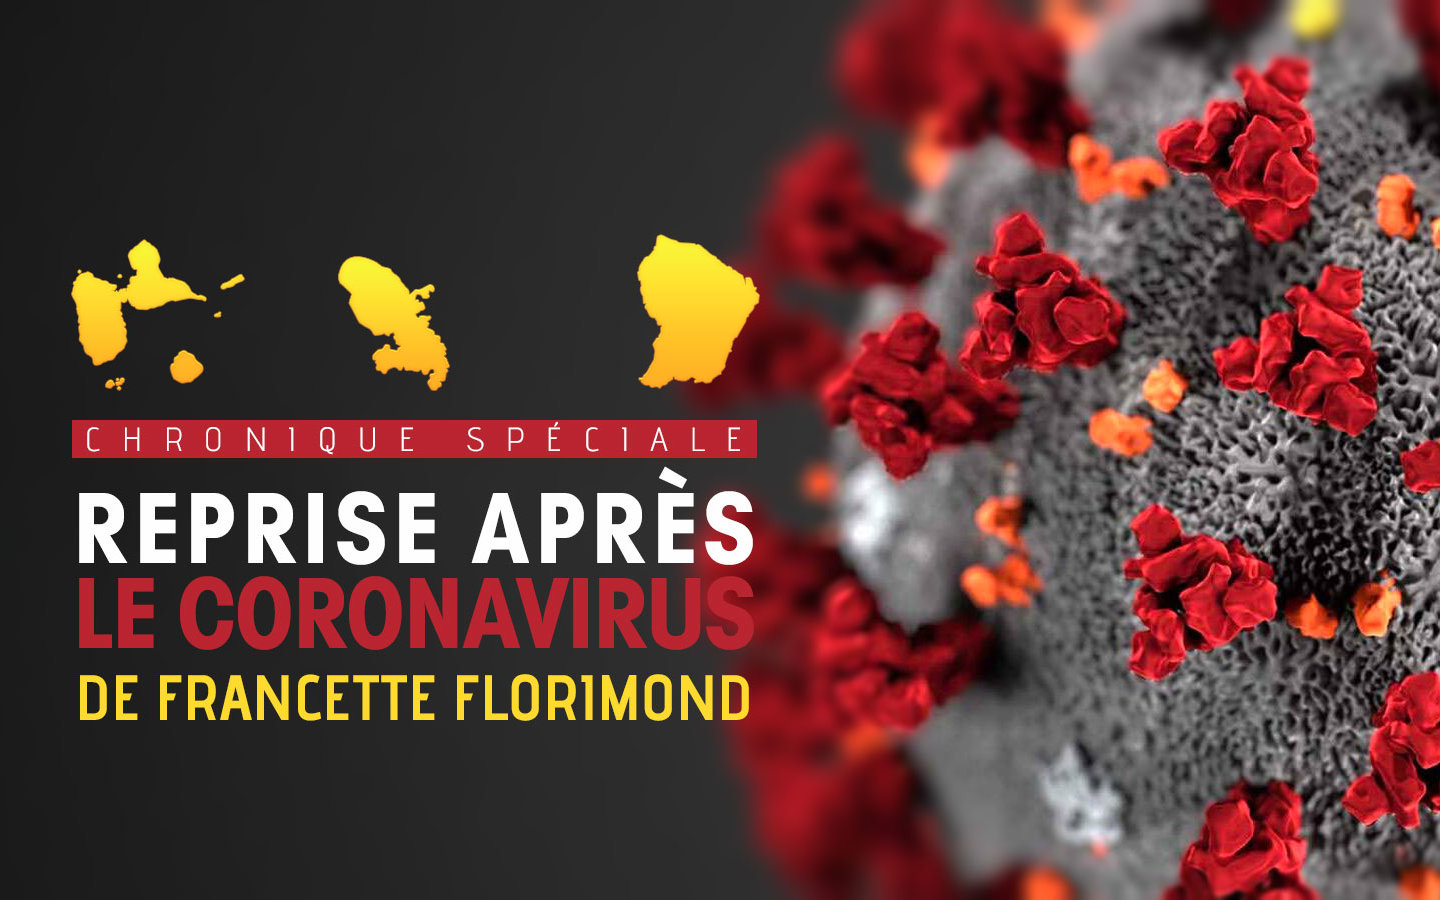 Chronique reprise après coronavirus : Pour que la maison France tienne, l’Etat prend des mesures !